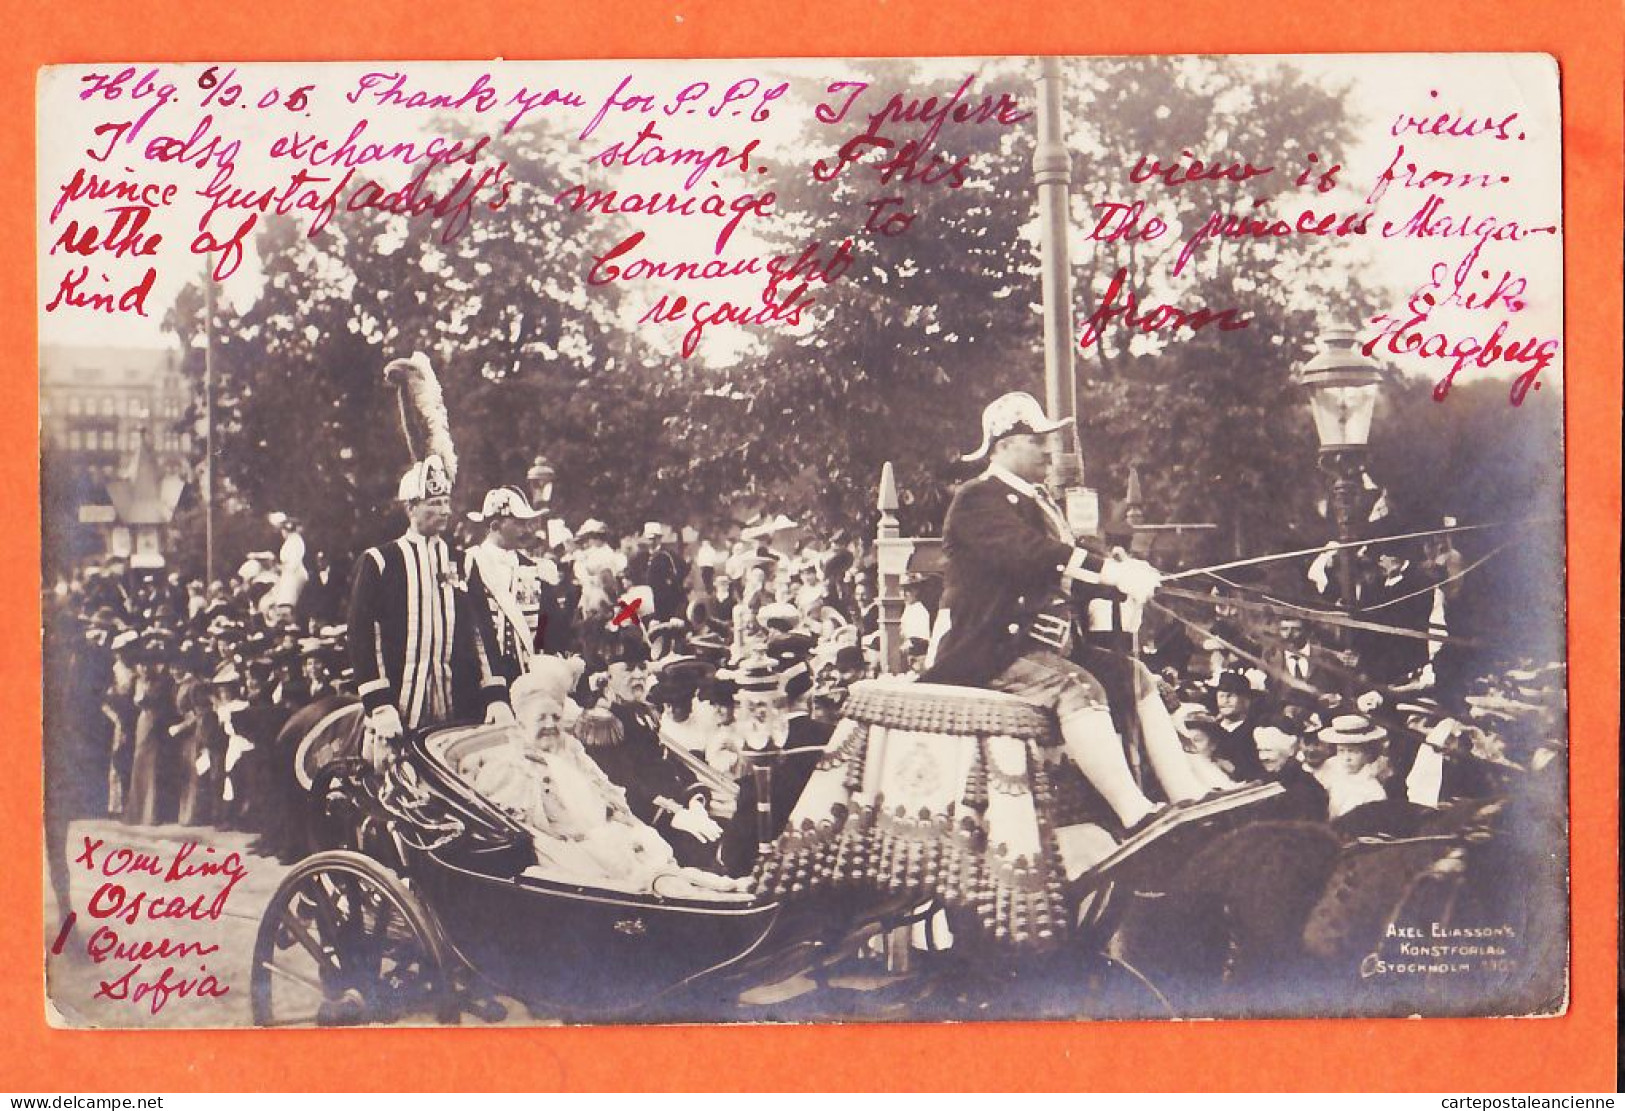 04614 / ⭐ ◉ ♥️ Sweden 15-06-1905 Wedding Prince GUSTAF ADOLPH'S Princess MARGARET De CONNAUGHT King OSCAR Queen SOFIA  - Suecia